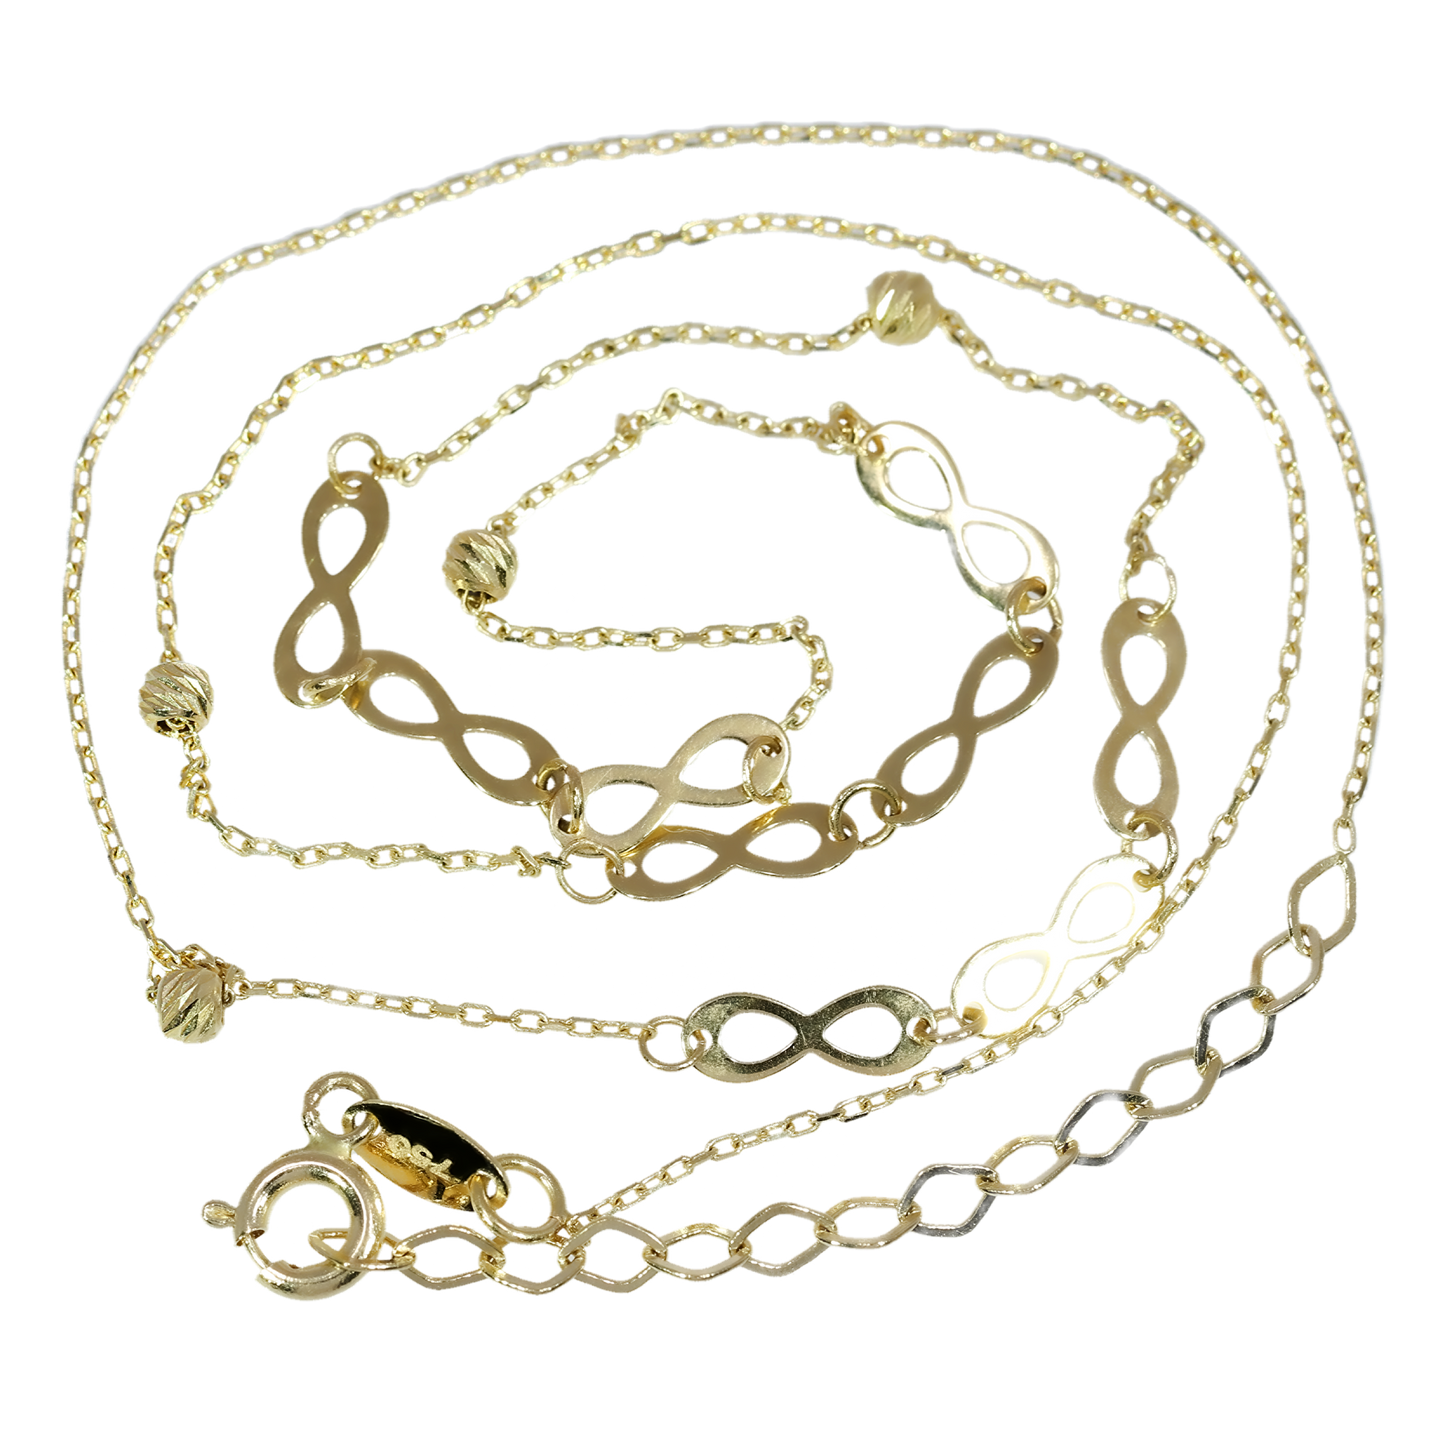 Collar Infinito - Oro Amarillo 18kt